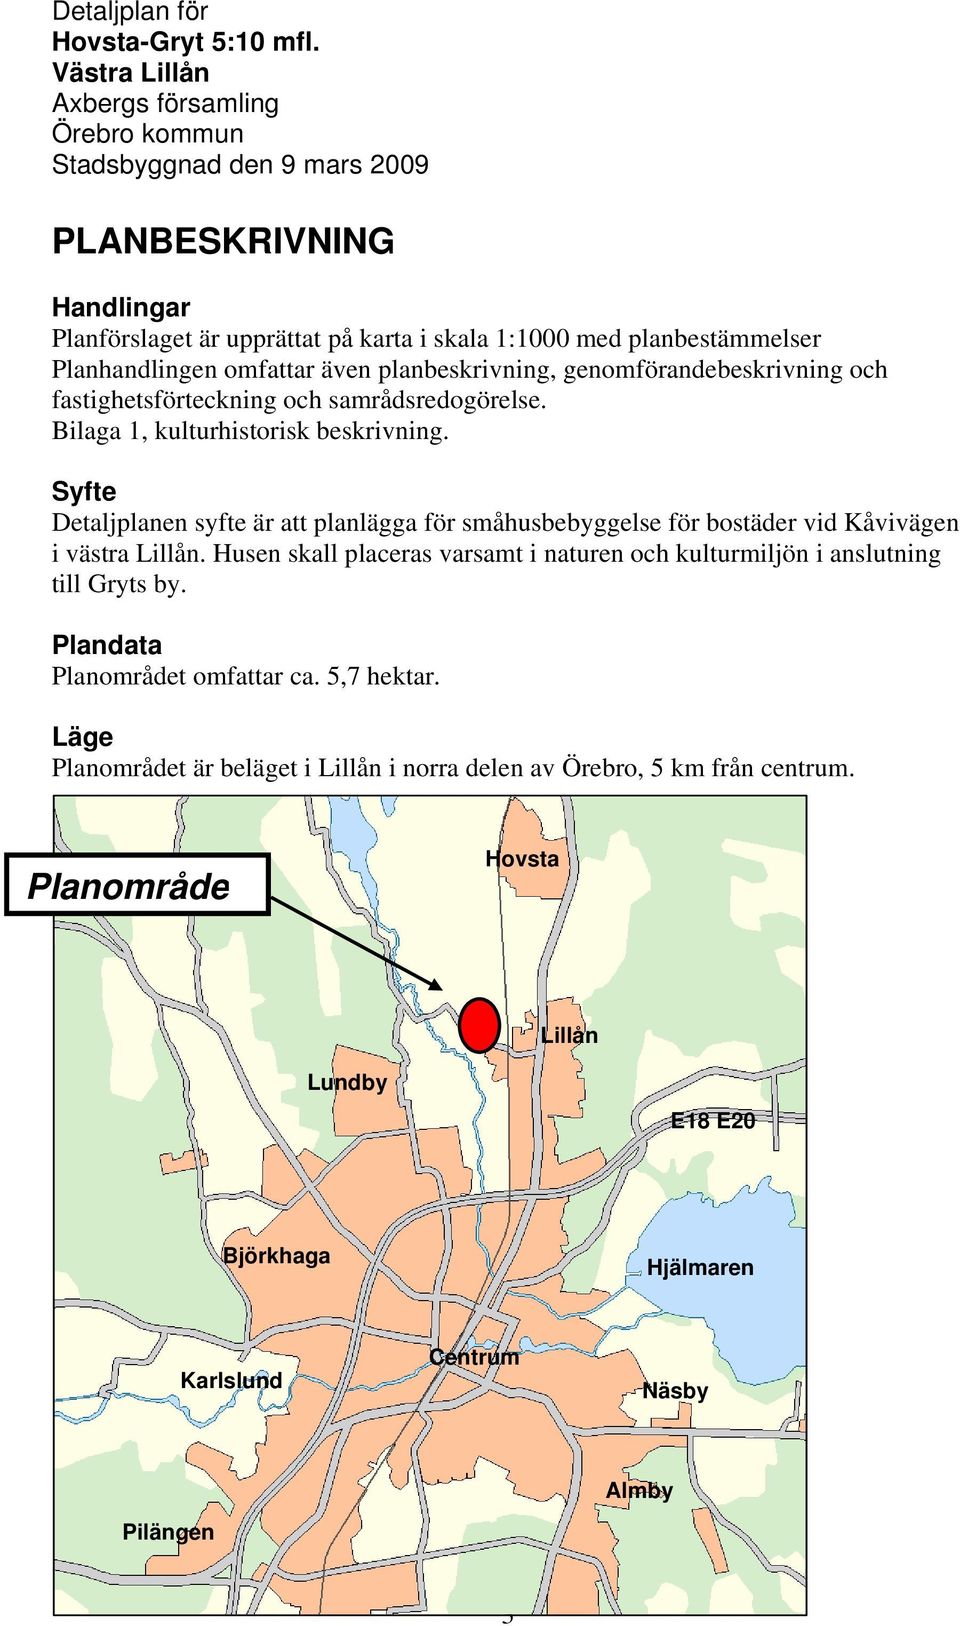 Detaljplan för HOVSTA-GRYT 5:10 mfl Västra Lillån - PDF Free Download